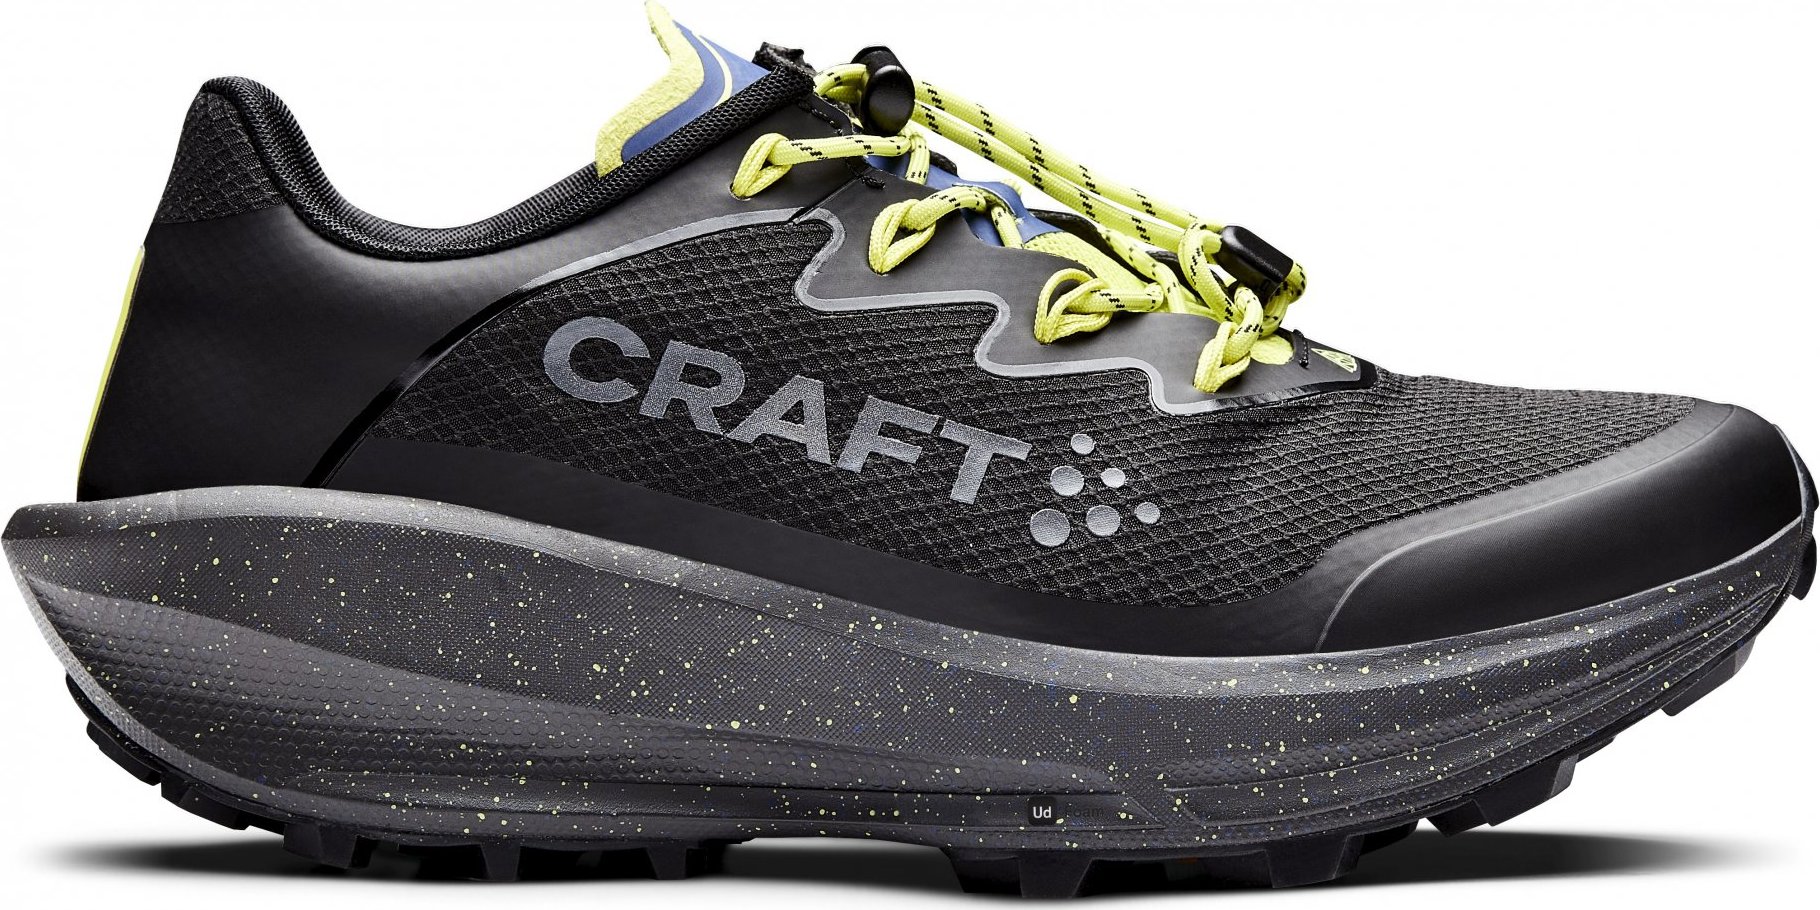 Dámské běžecké boty CRAFT Ctm Ultra Carbon Trail černé Velikost: 4,5